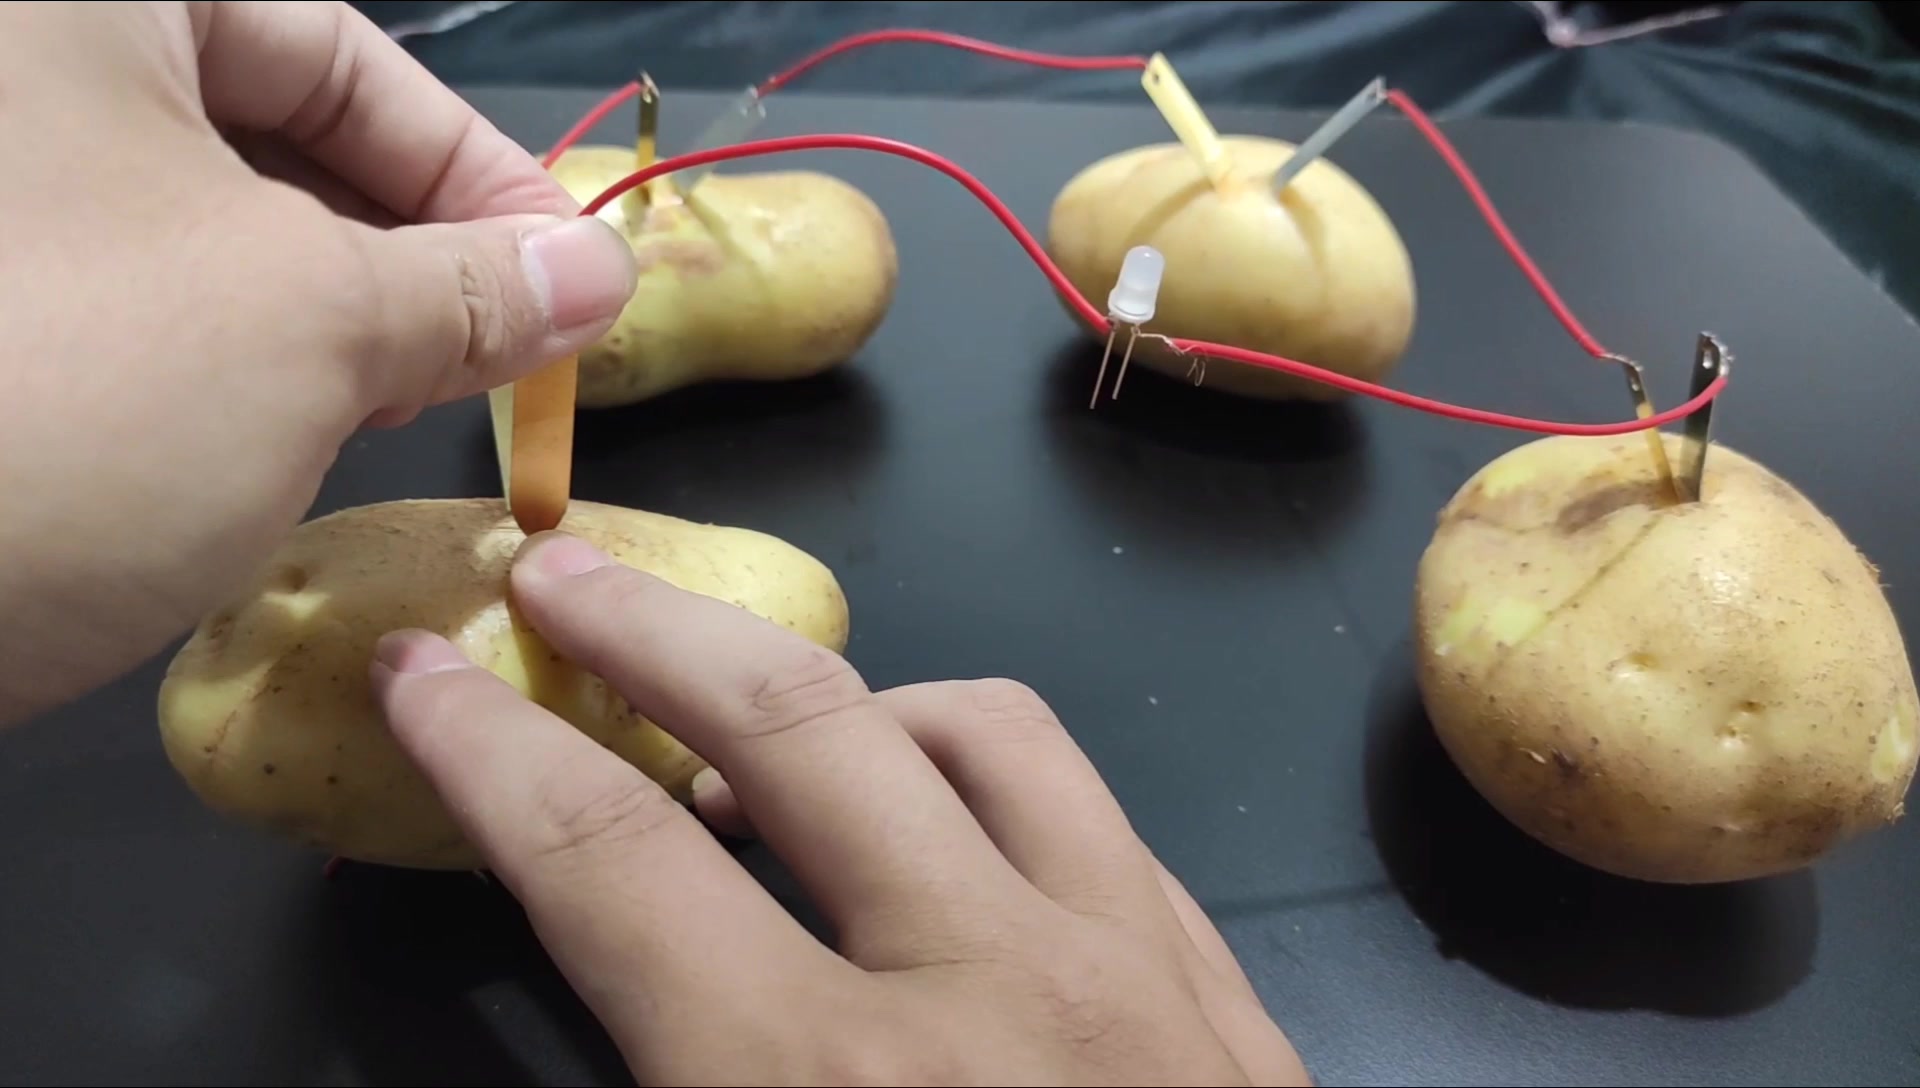 吃不完的土豆用来发电做电池用竟然可以点亮一盏小灯泡